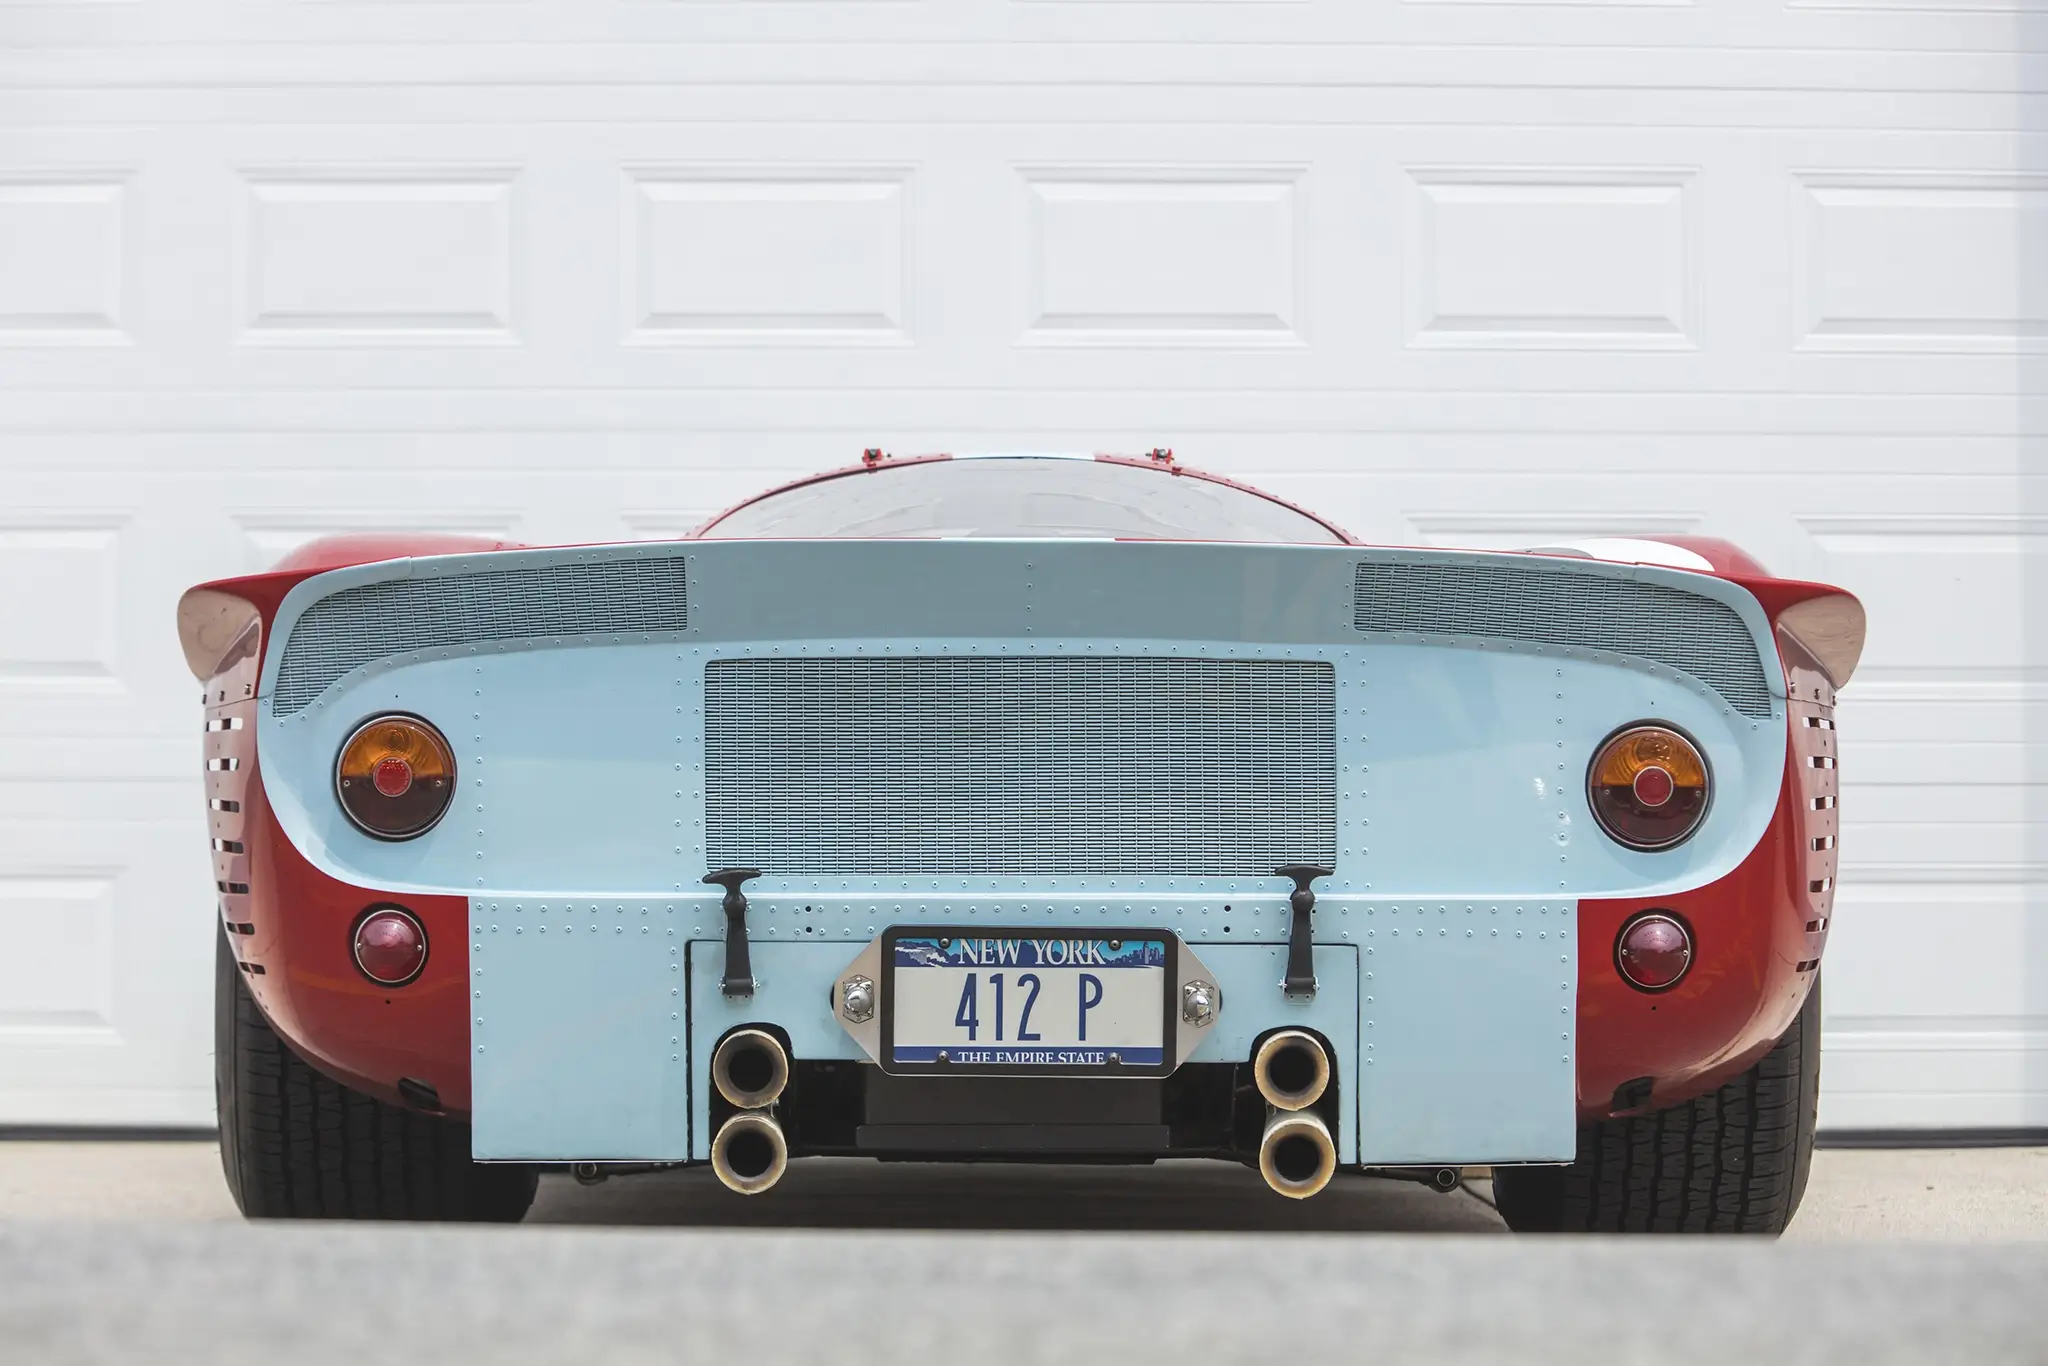 Ferrari 412P Berlinetta visto de traseira